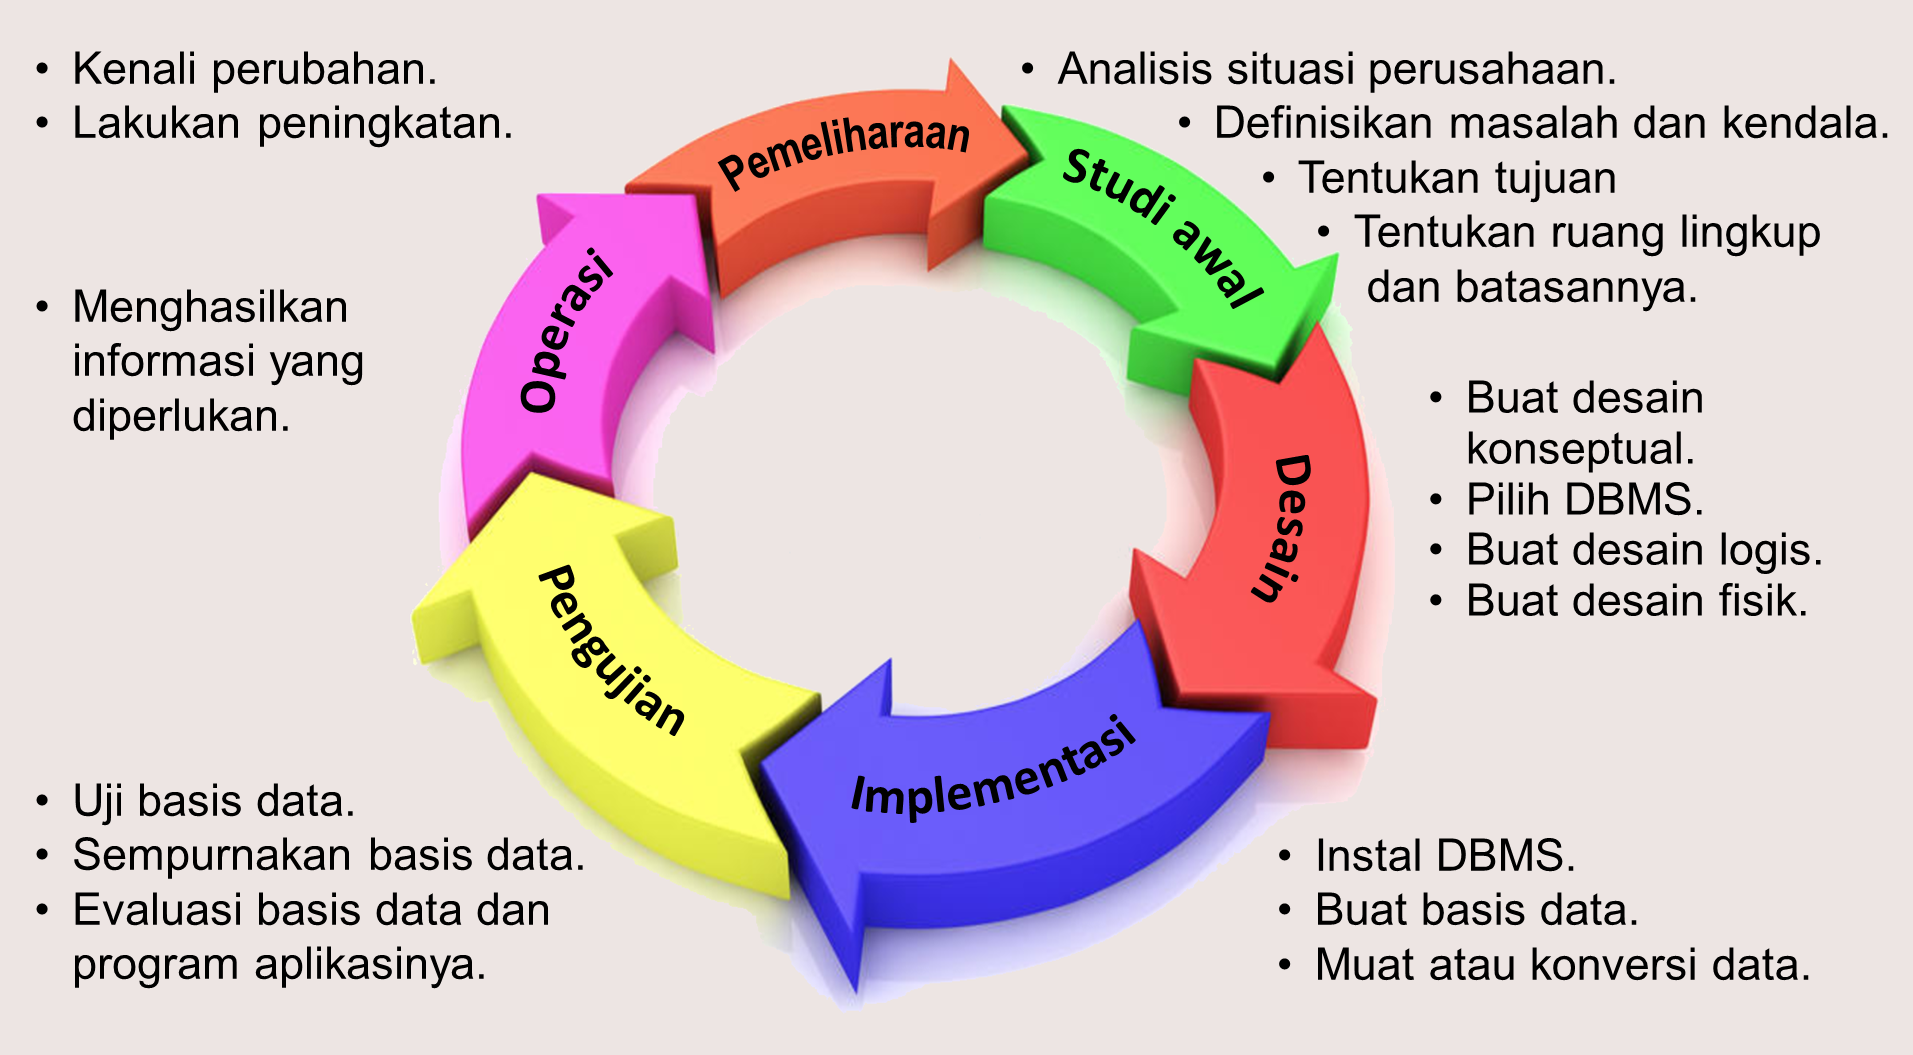 Siklus Hidup Basis Data Riwayat Basis Data Dalam Sistem Informasi